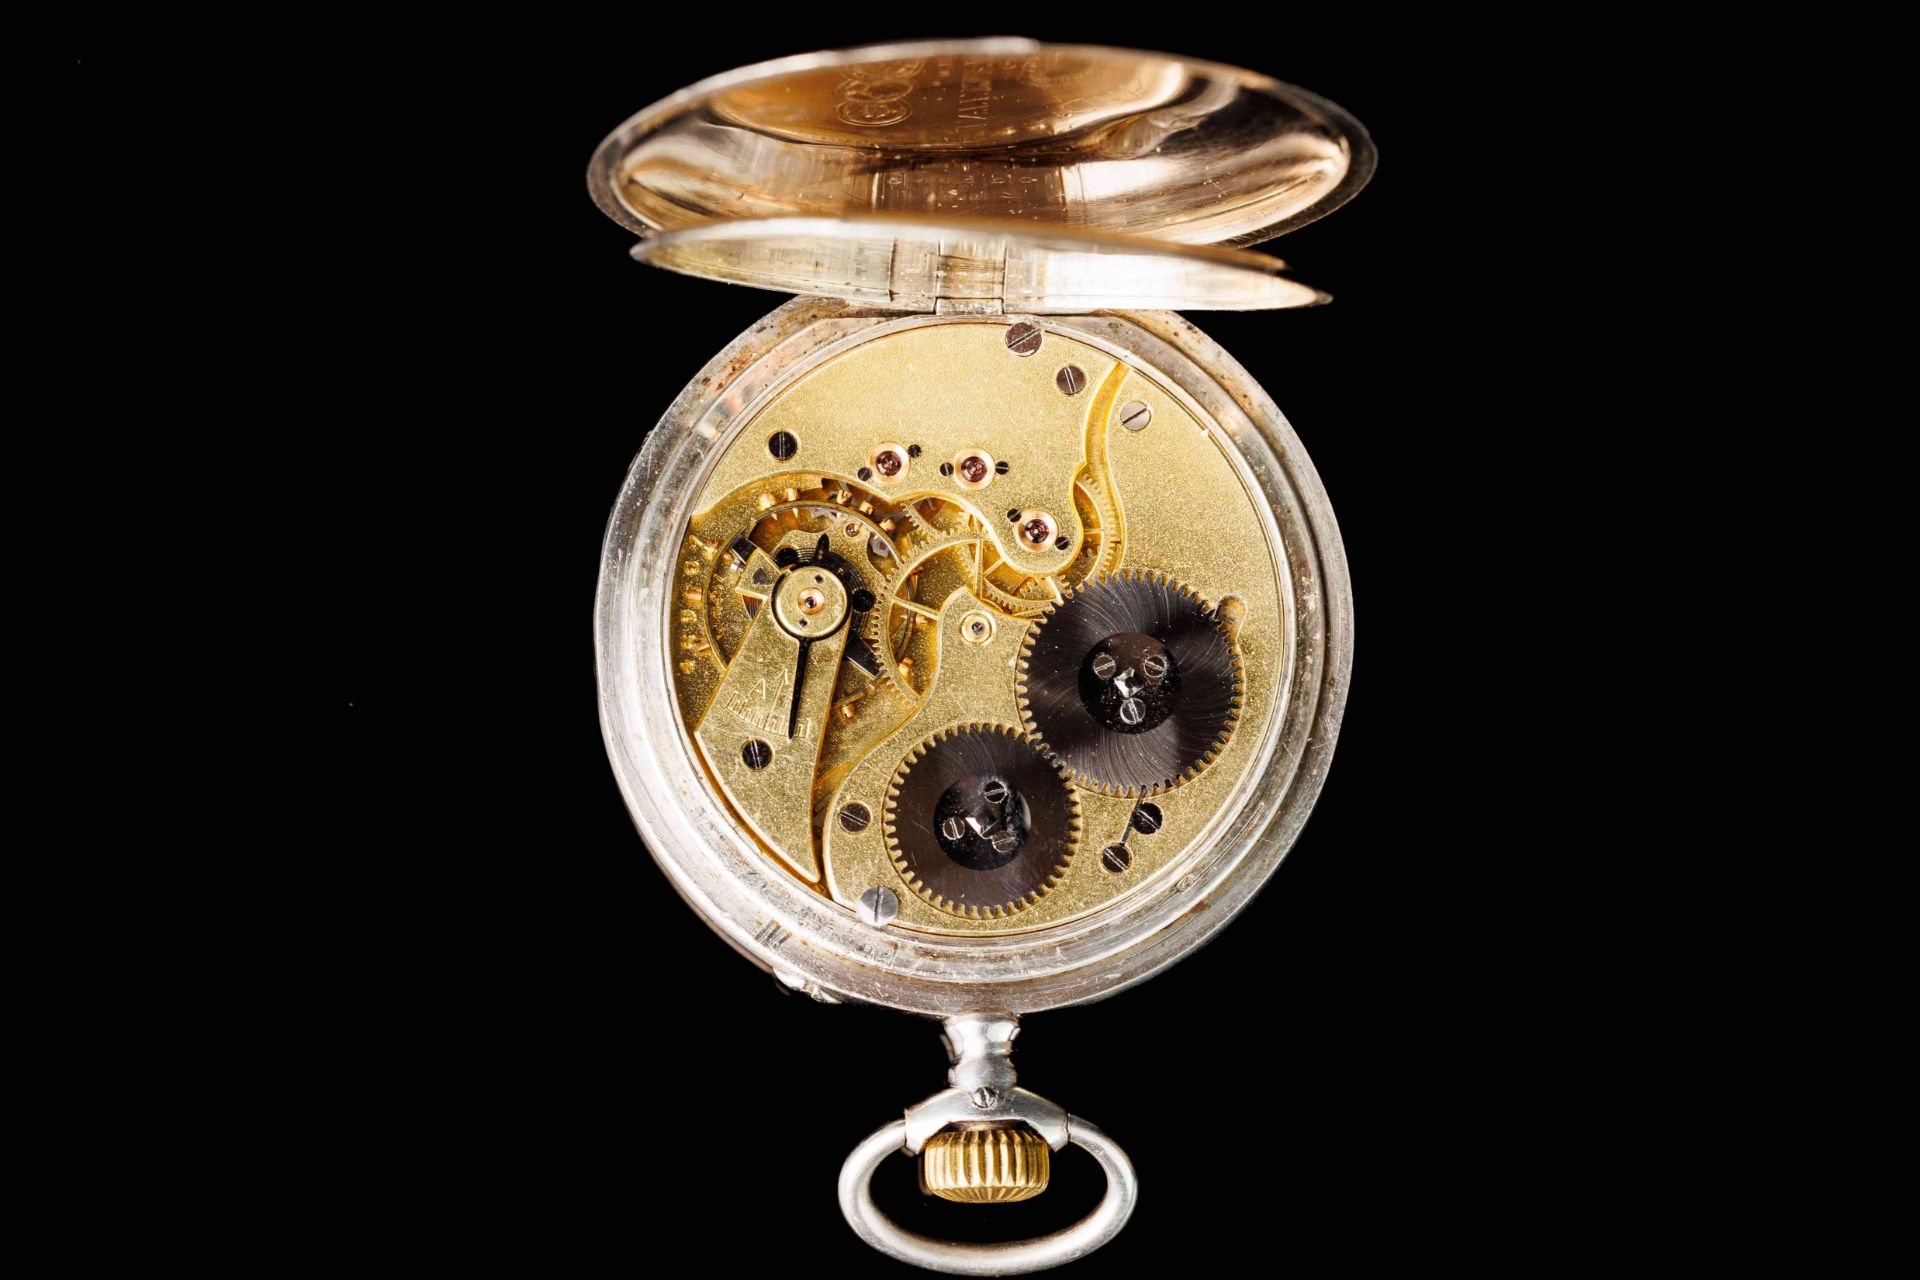 Silver Vintage Pocket Watch  International Watch Co.
Schaffhausen - Image 6 of 7